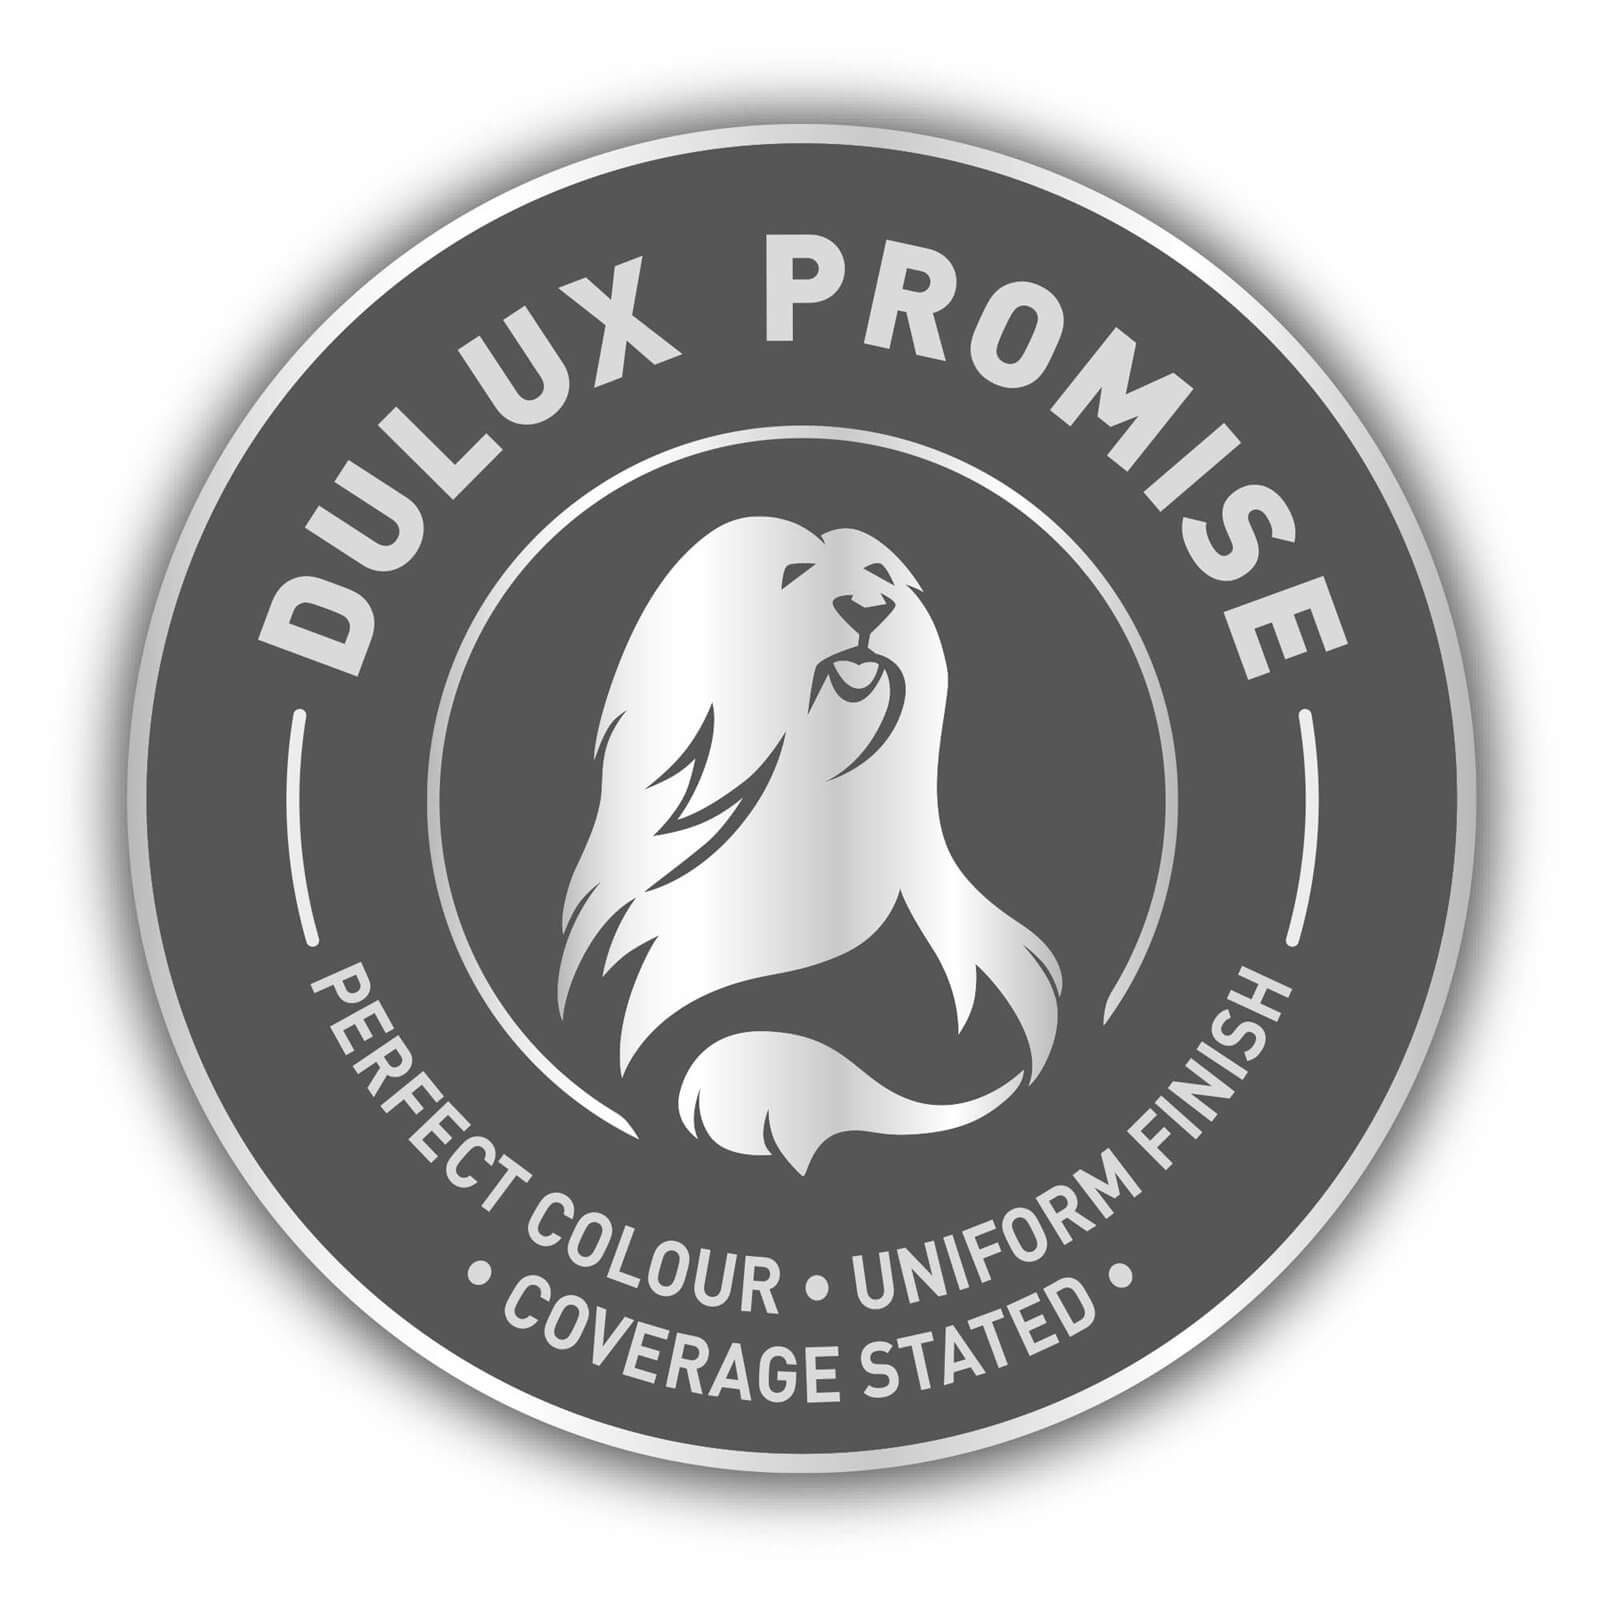 Dulux Matt Emulsion Paint Sapphire Salute - 2.5L